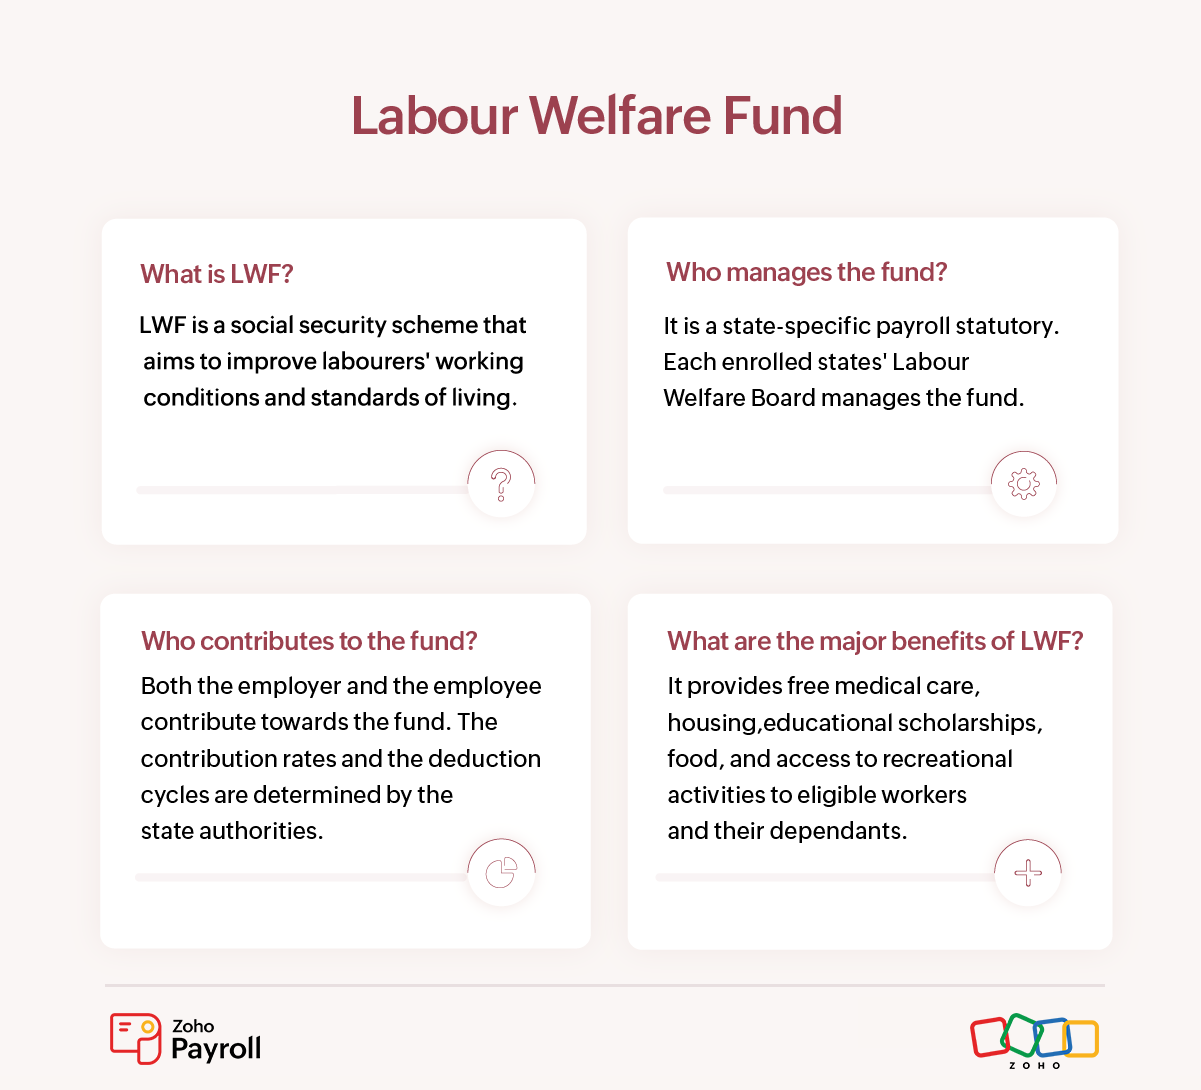 Labour-welfare-fund-scheme-infographic